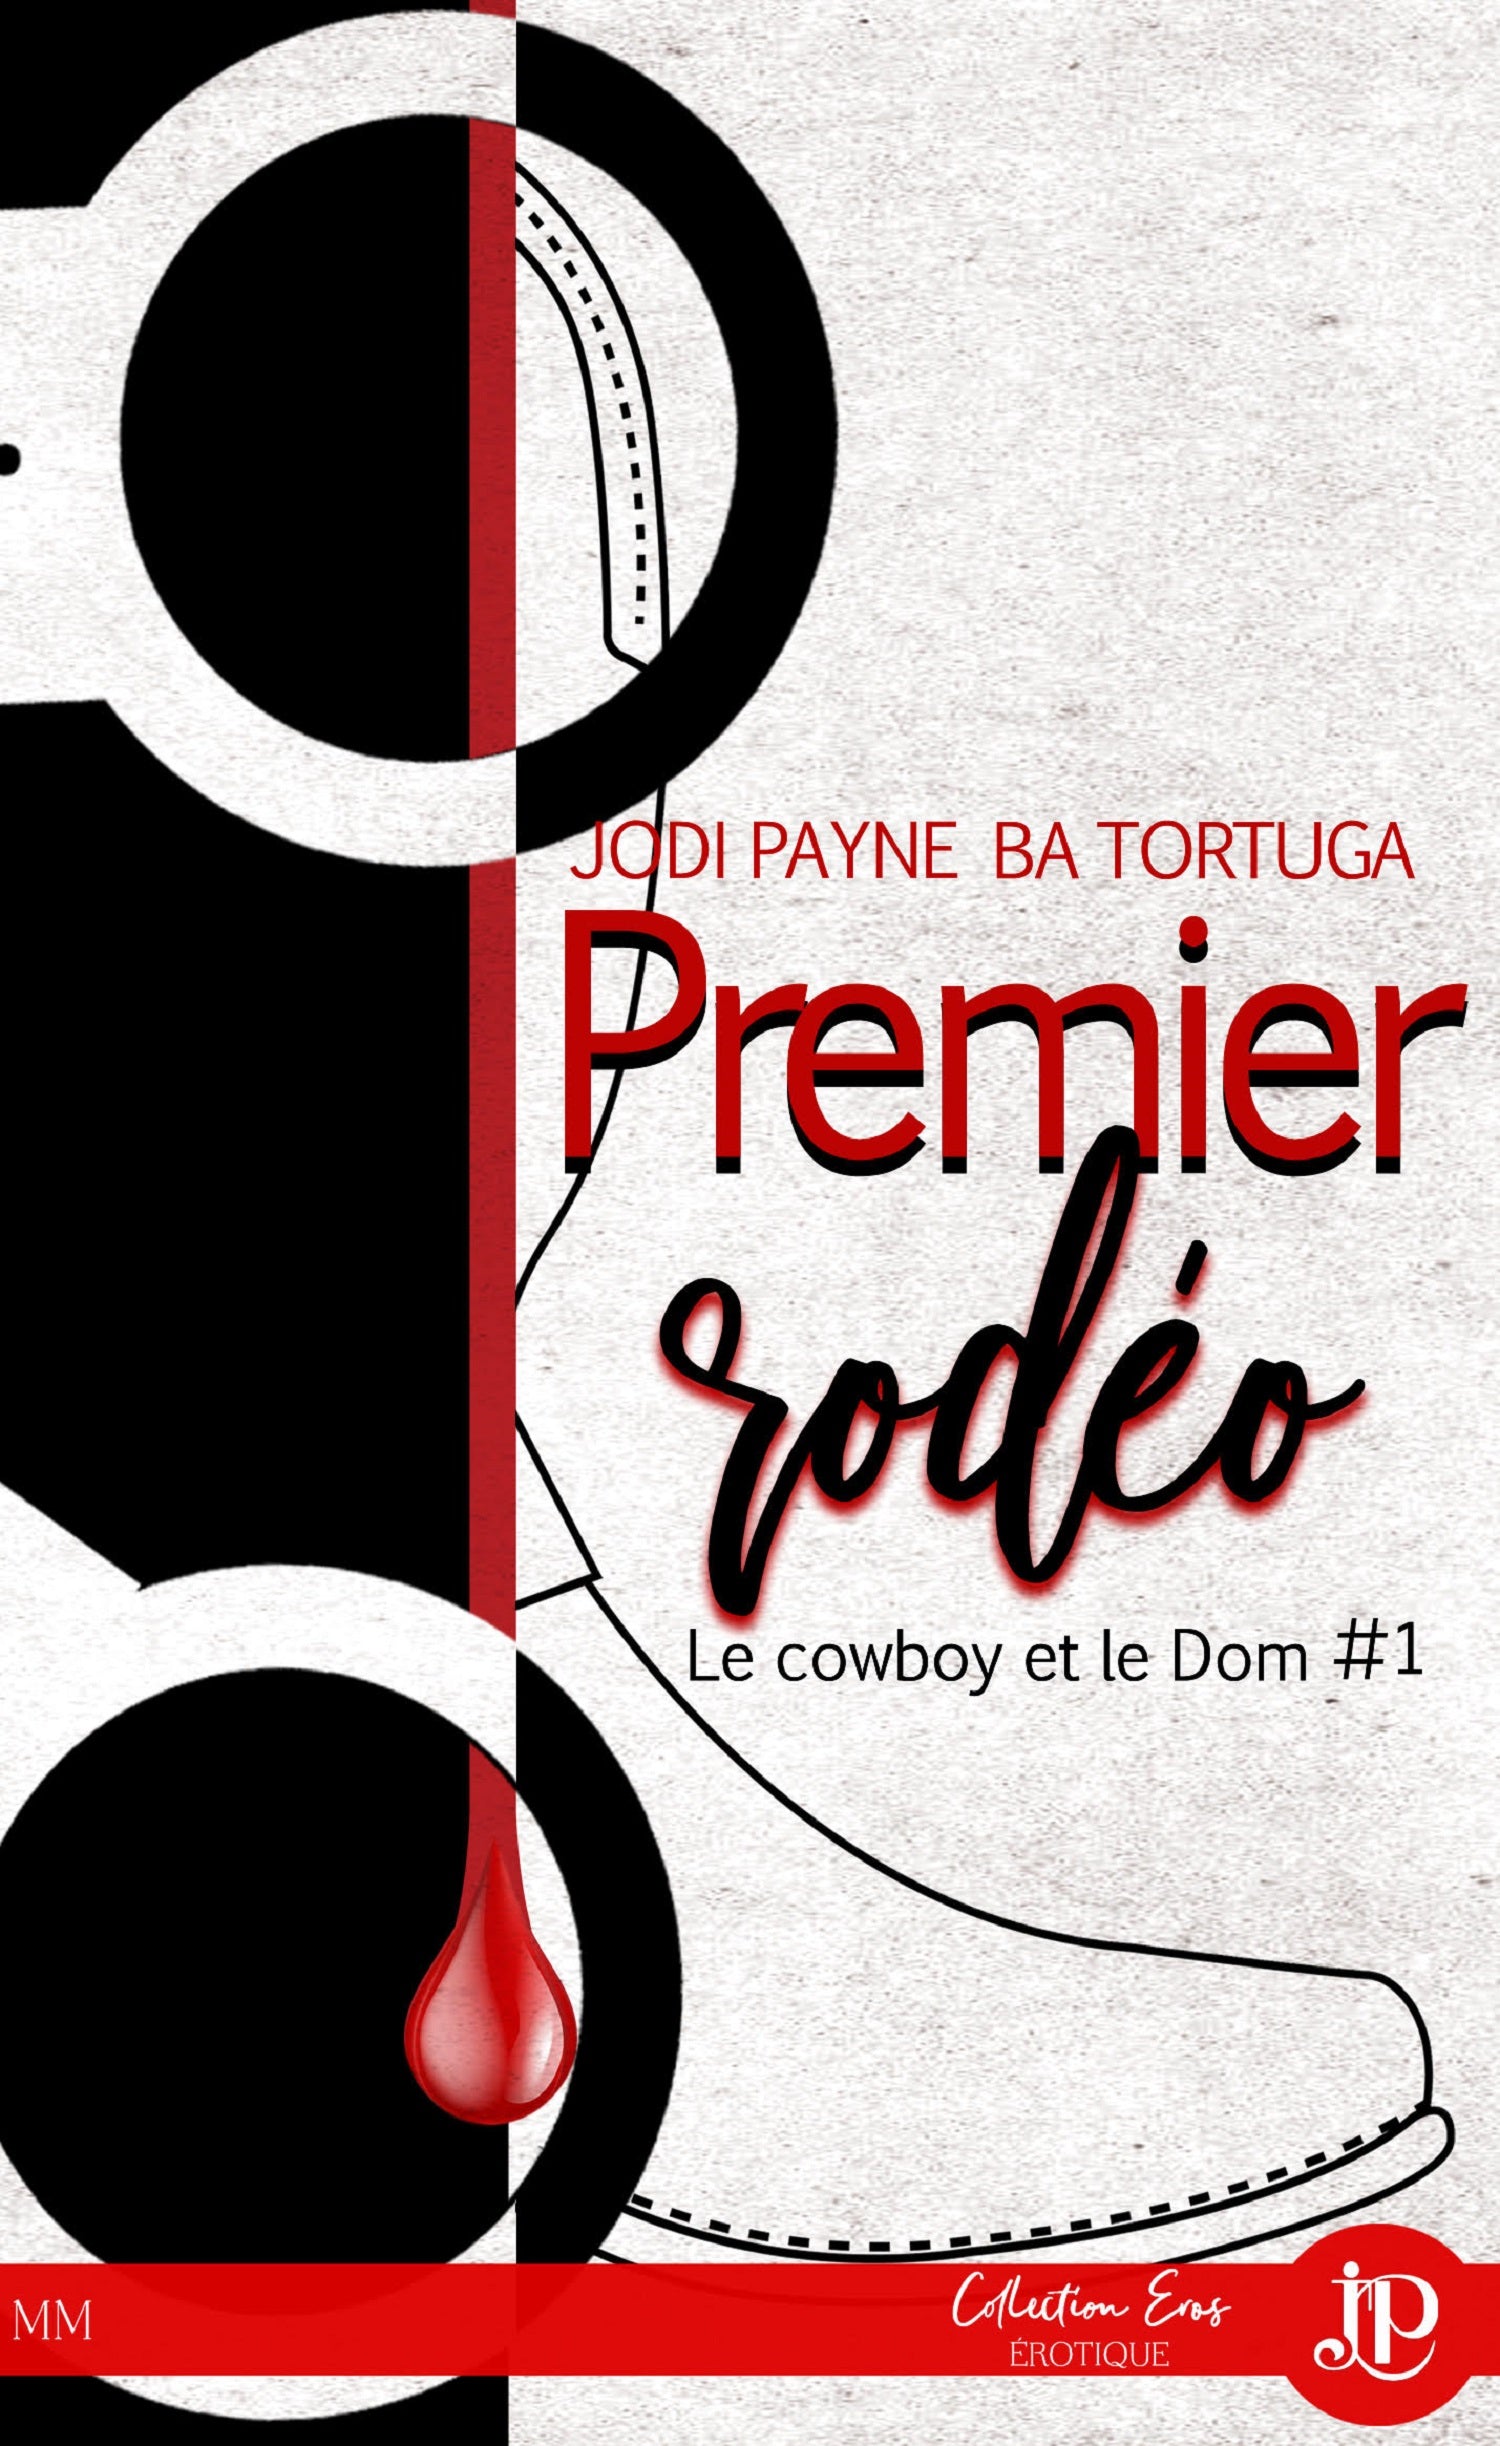 le cowboy et le Dom #1 Premier Rodéo